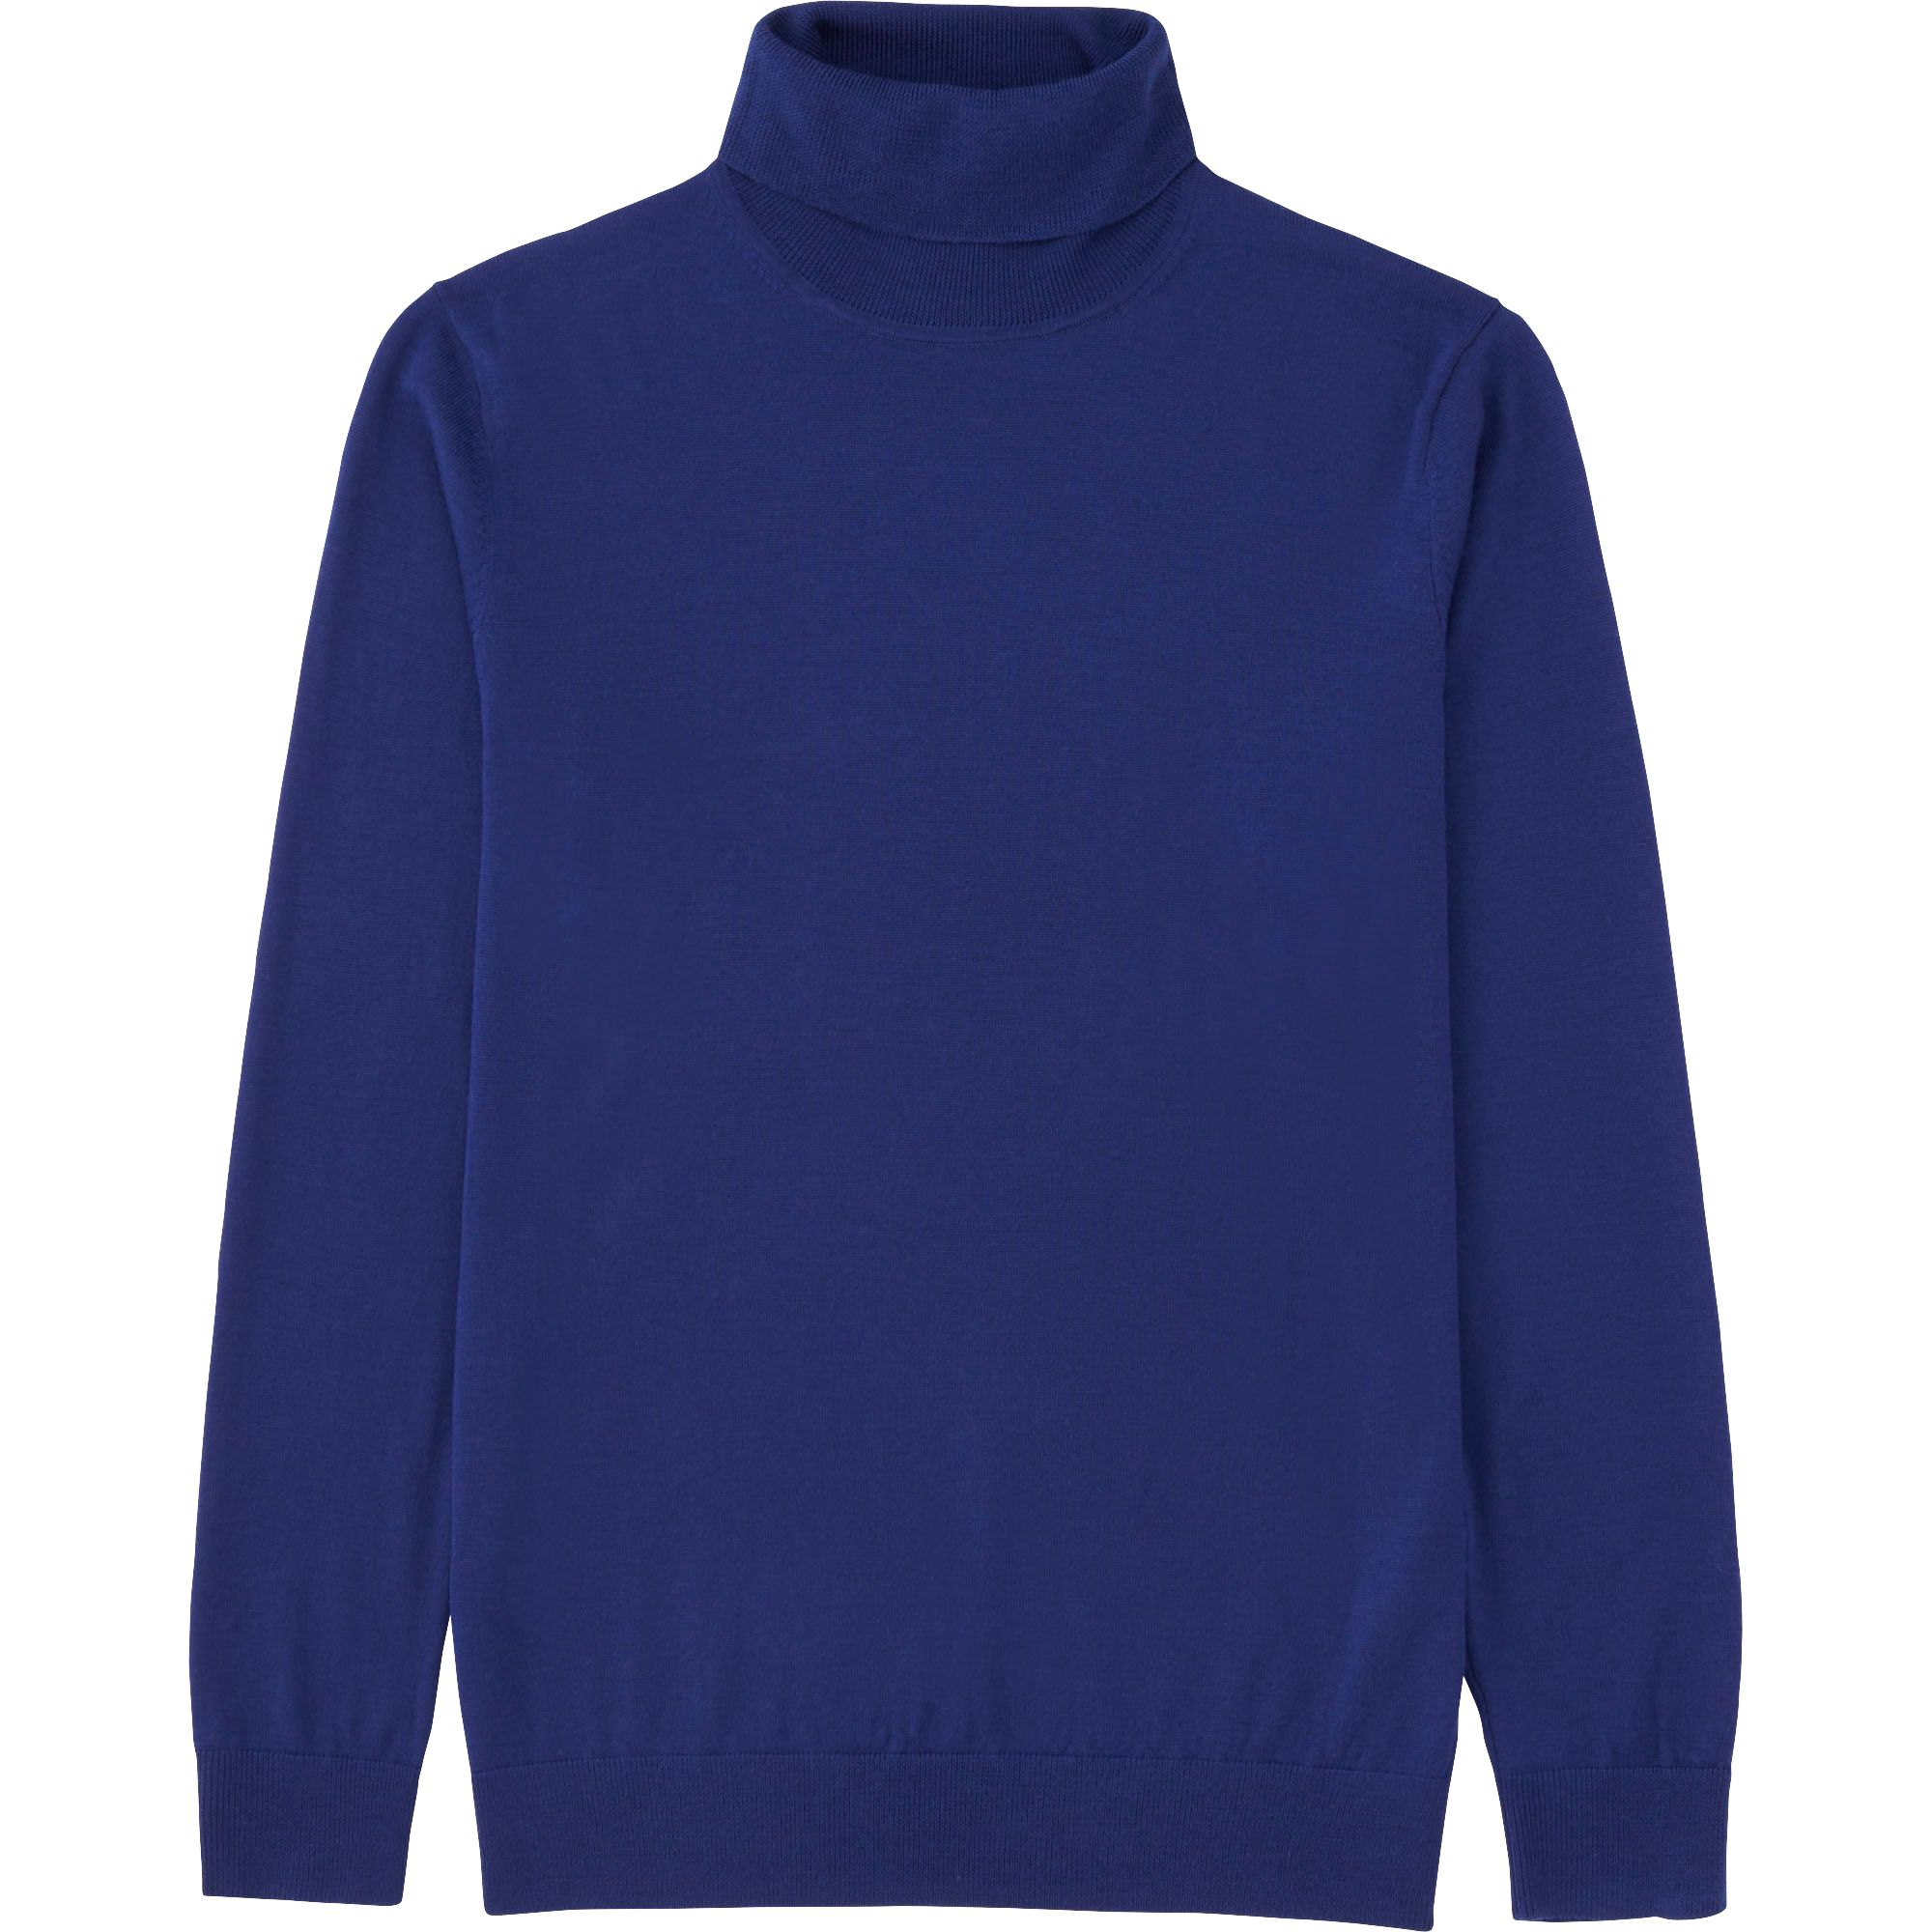 Uniqlo Men Extra Fine Merino Turtleneck Sweater in Blue ...